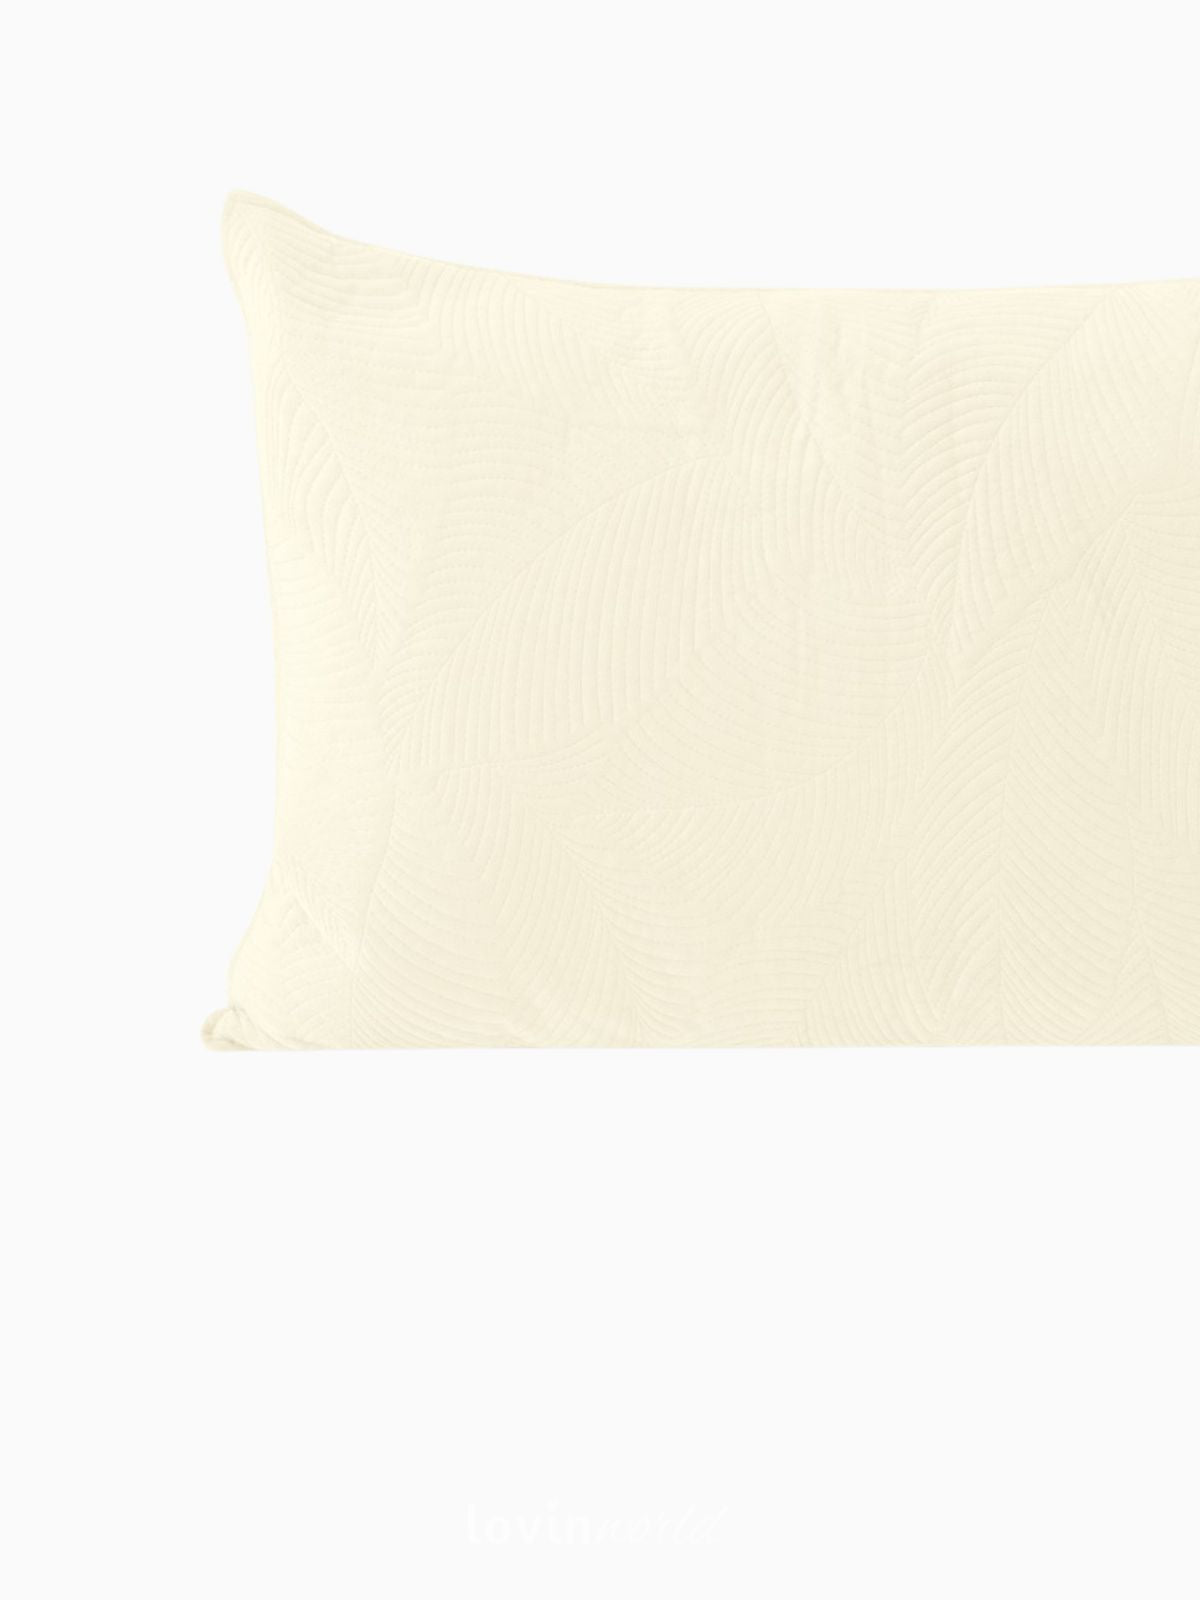 Cuscino decorativo in velluto Palsha, colore beige chiaro 50x70 cm.-2